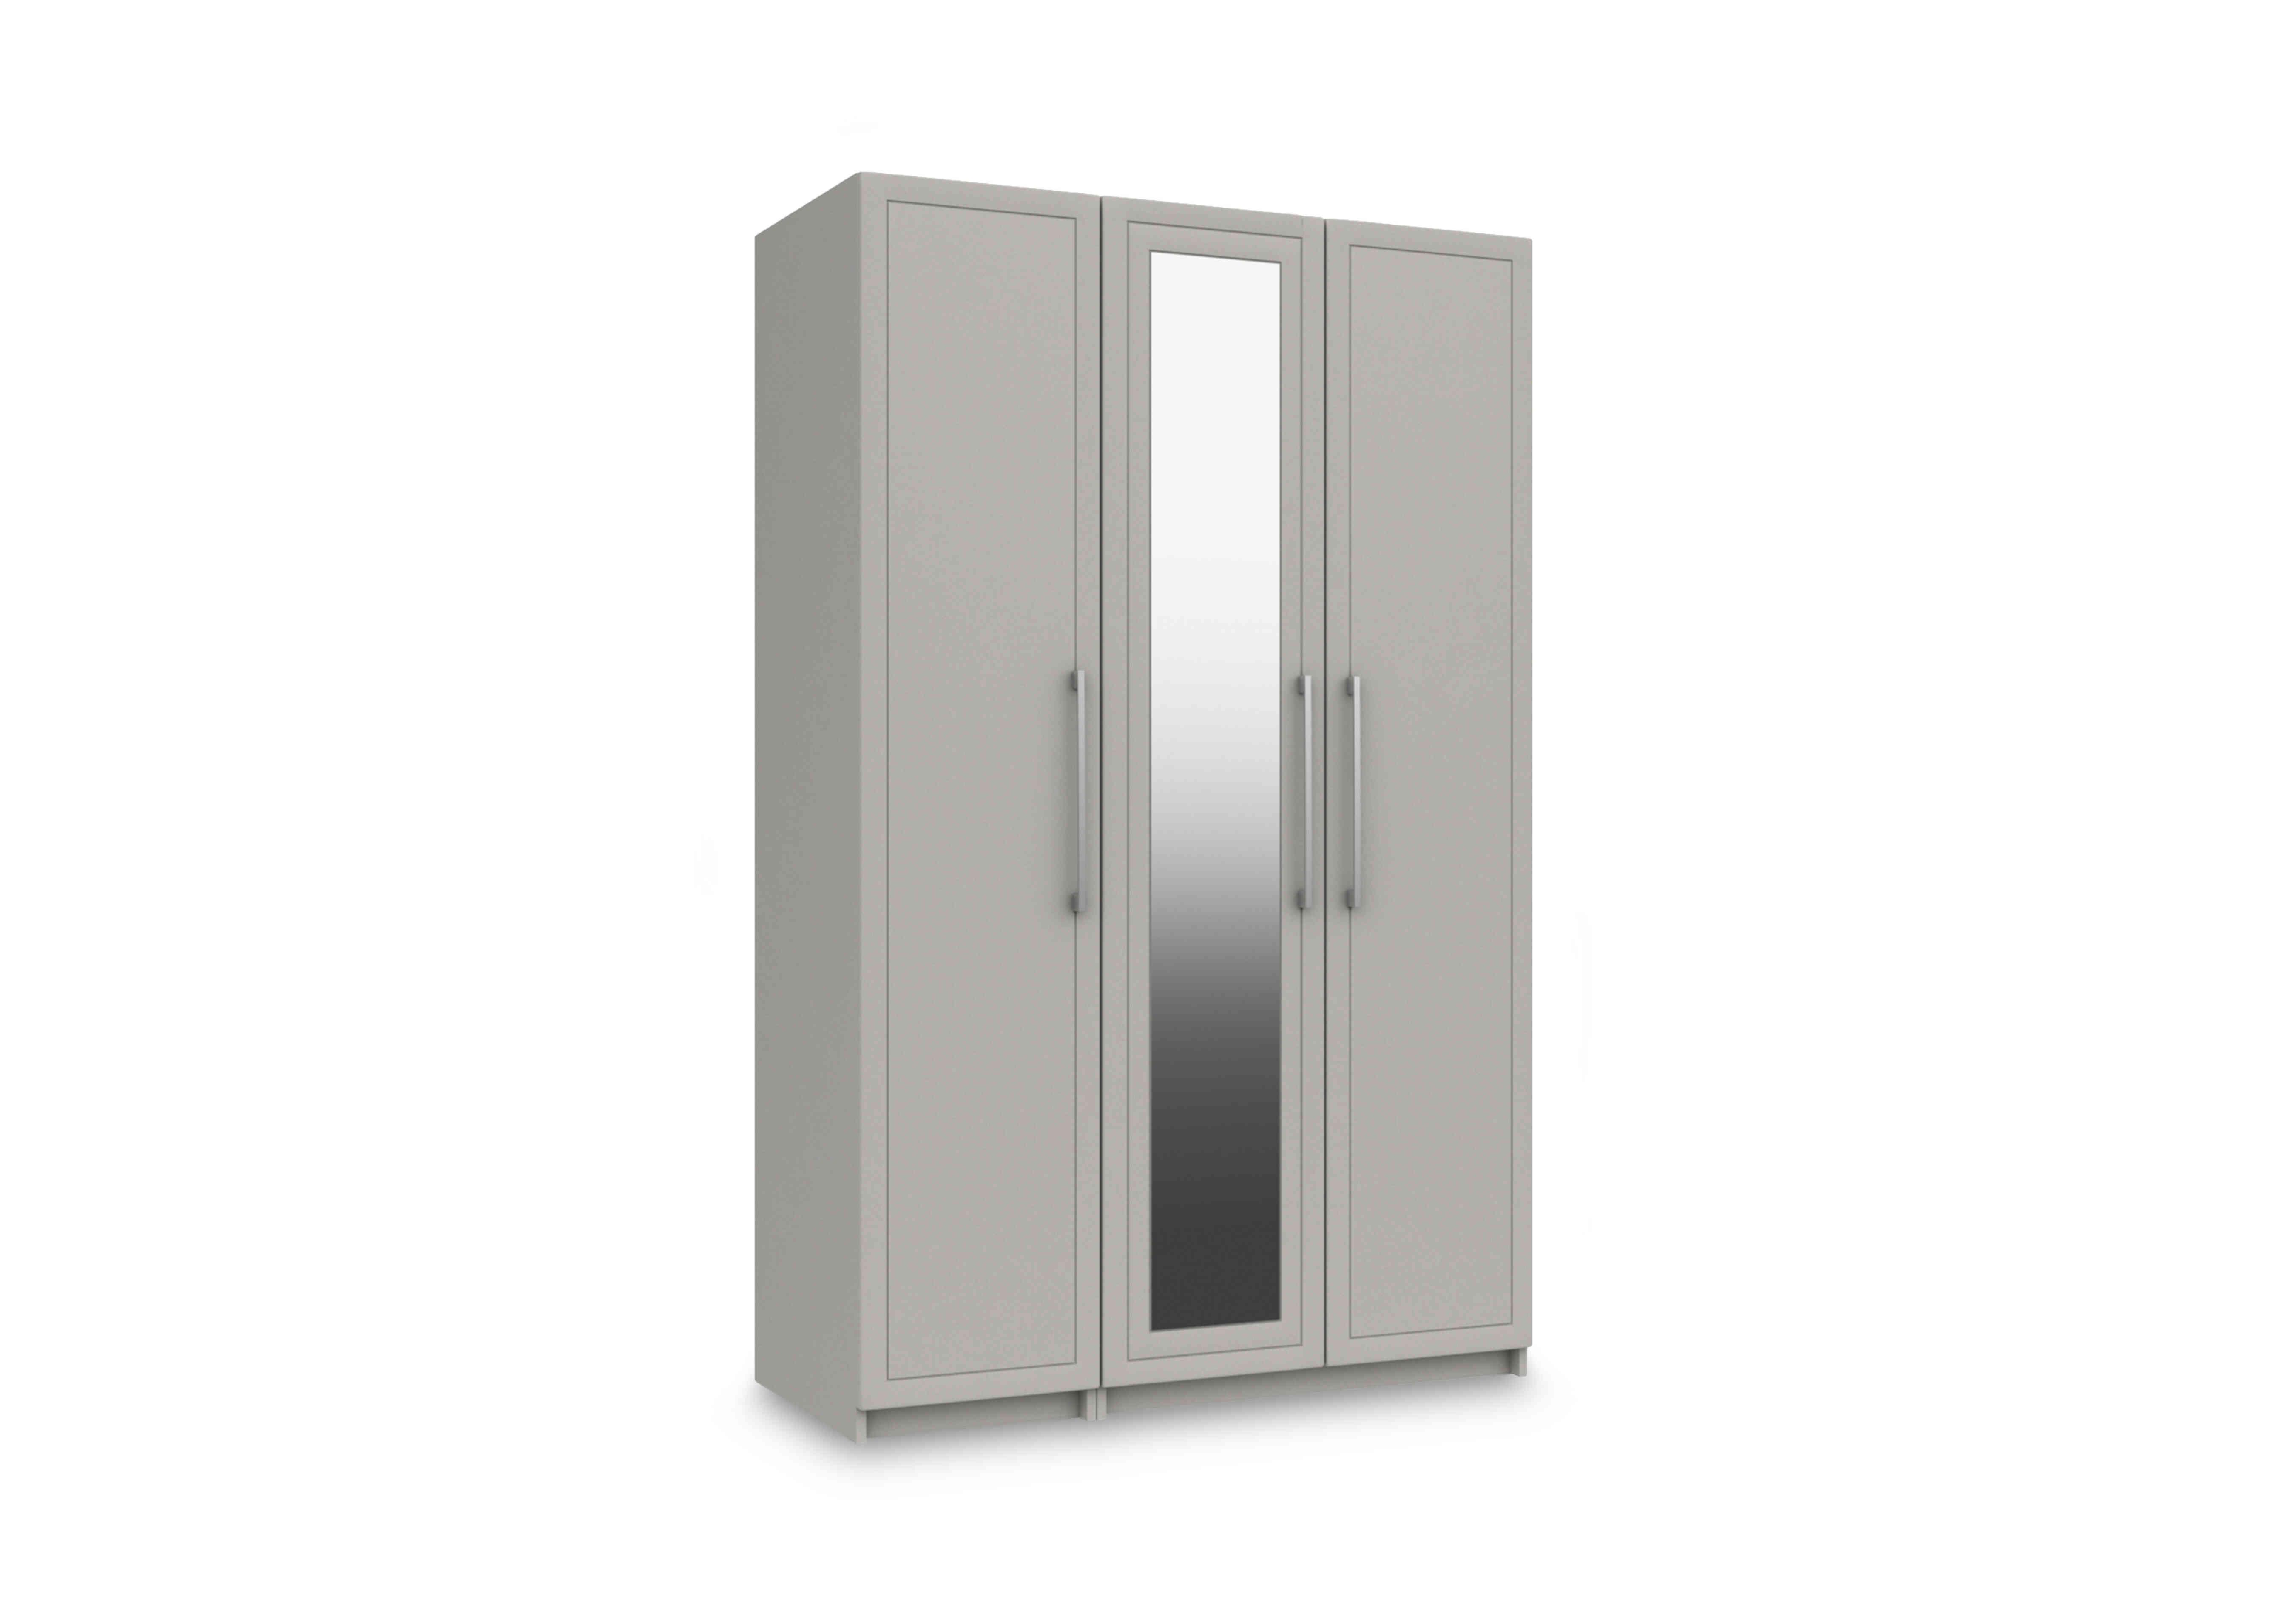 Bexley 3 Door Wardrobe with Mirror Door in Light Grey Gloss on Furniture Village